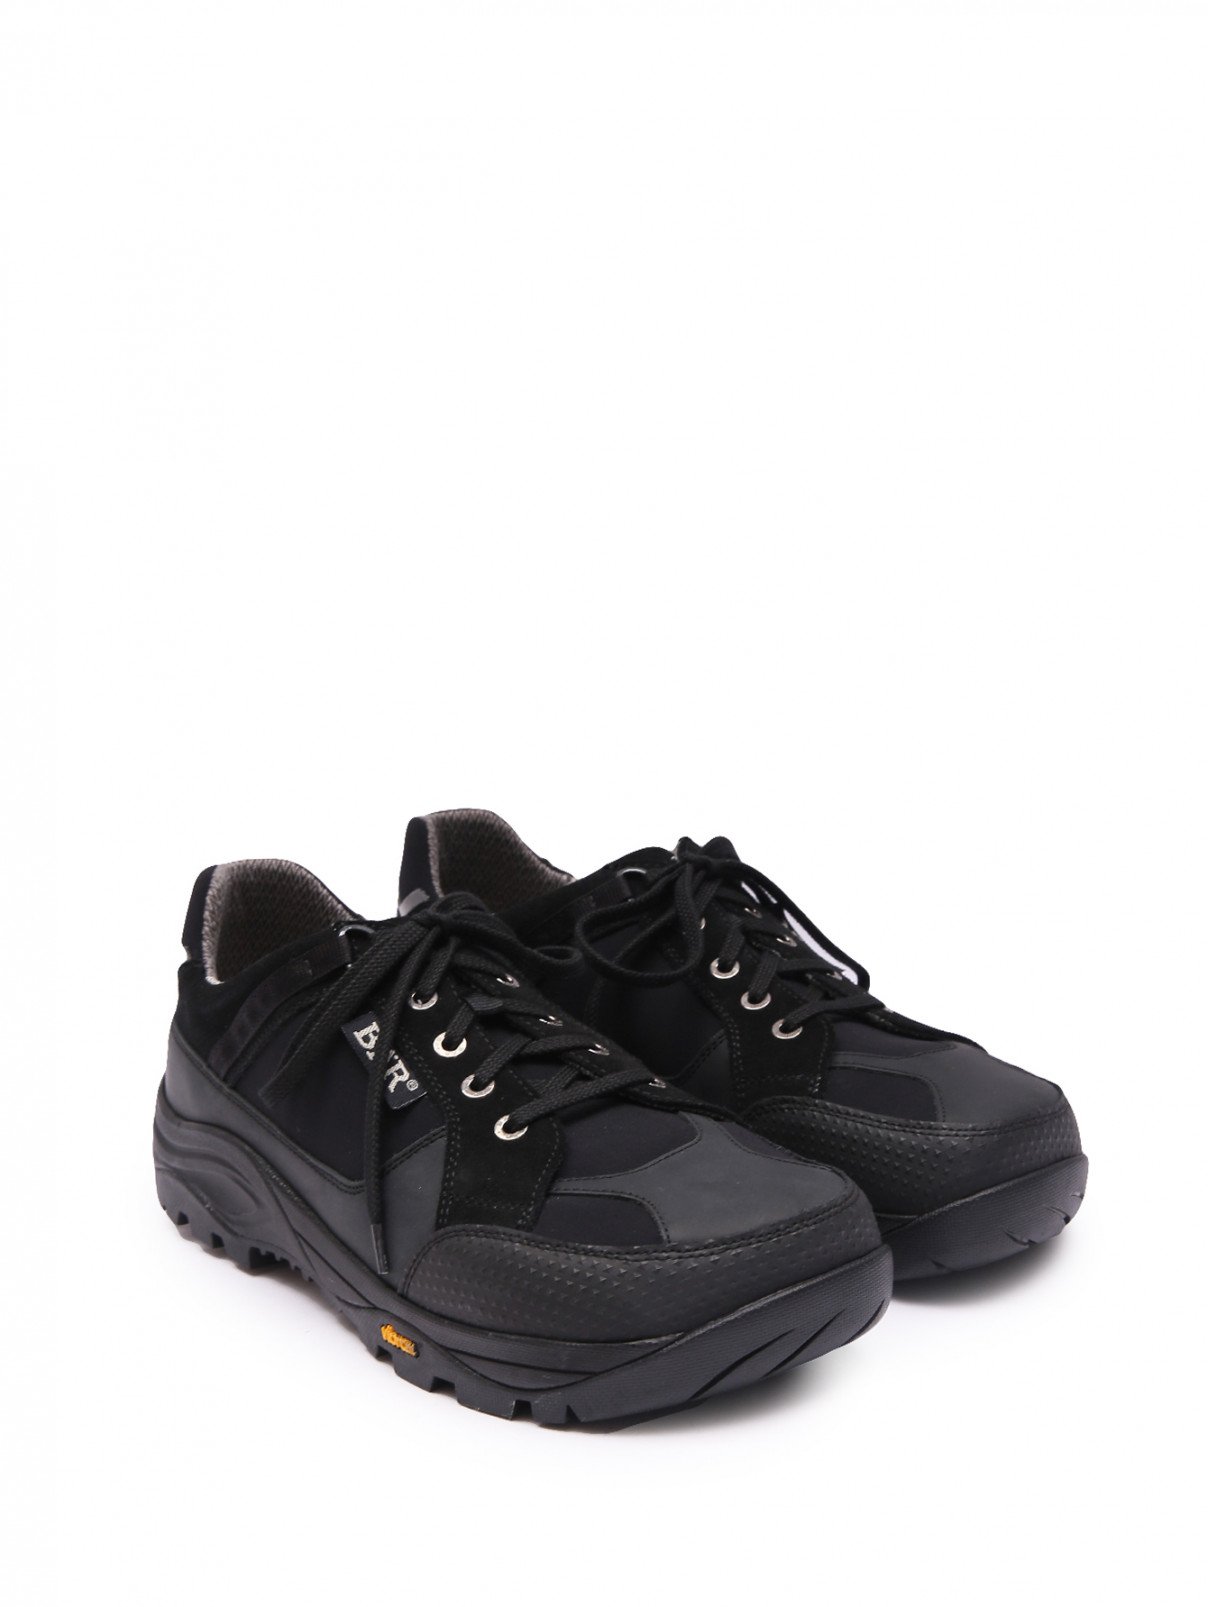 Комбинированные ботинки на шнурках BAER  –  Общий вид